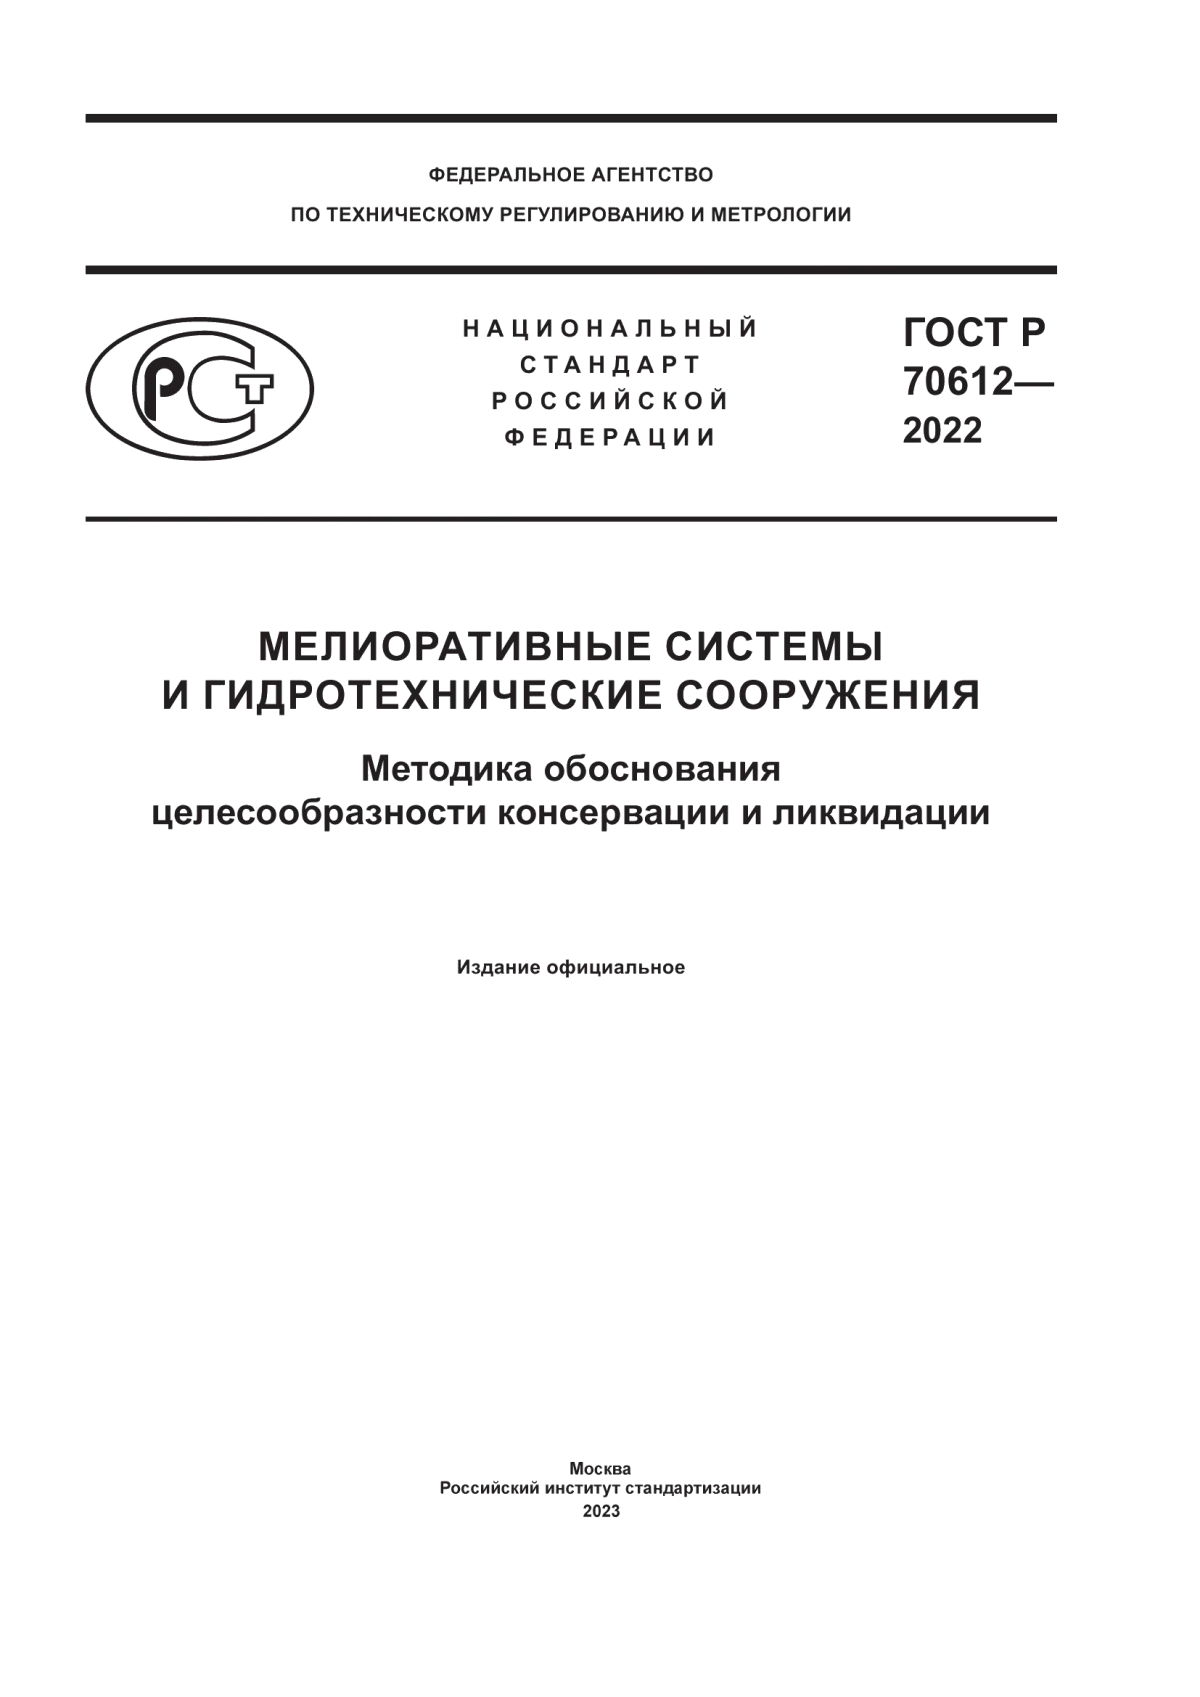 ГОСТ Р 70612-2022 Мелиоративные системы и гидротехнические сооружения. Методика обоснования целесообразности консервации и ликвидации